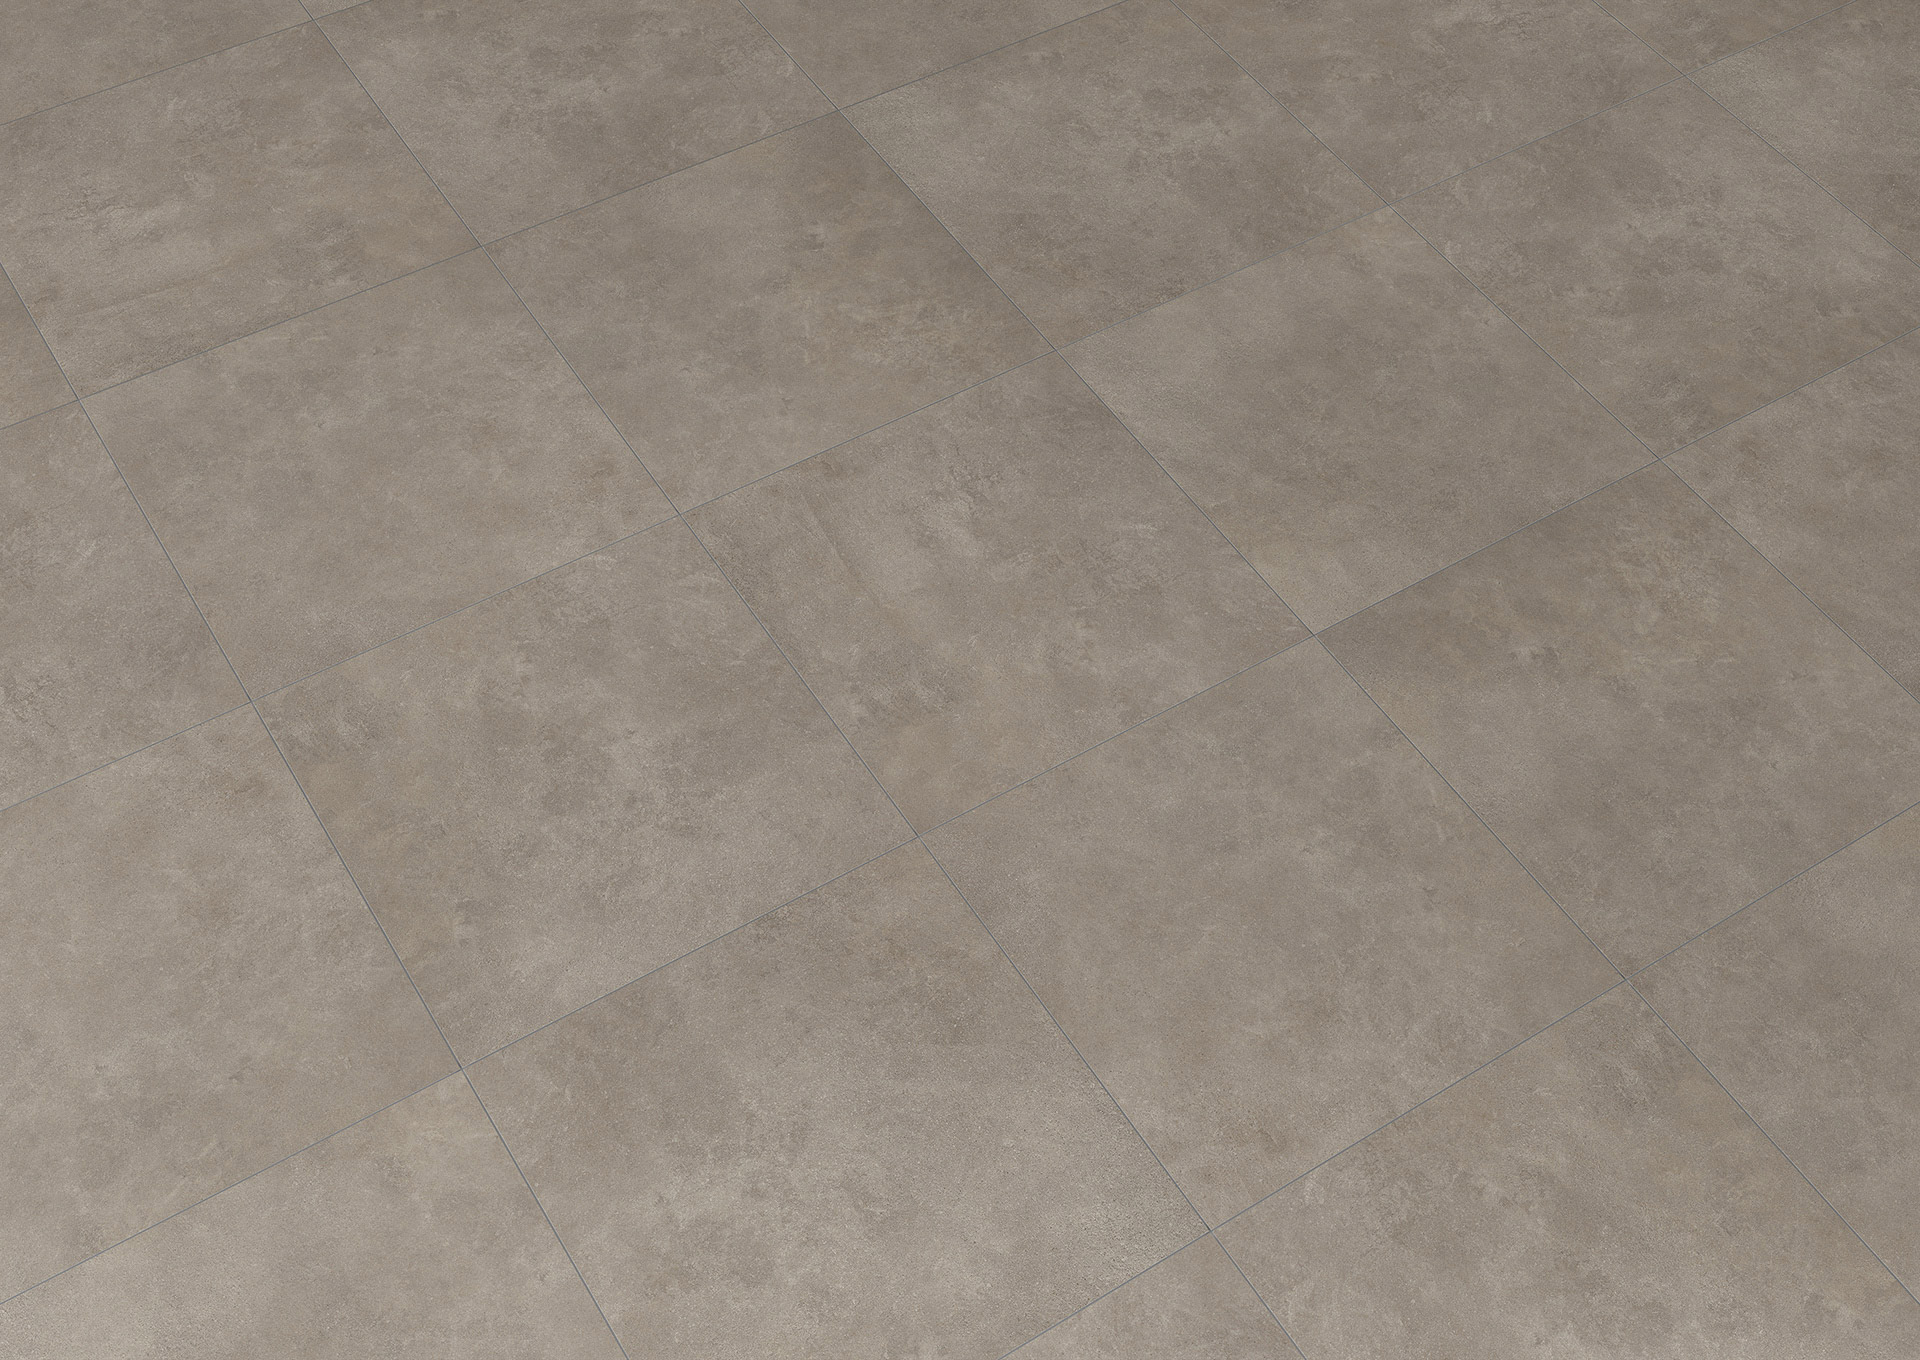 Duncan beige 60x60 flooring